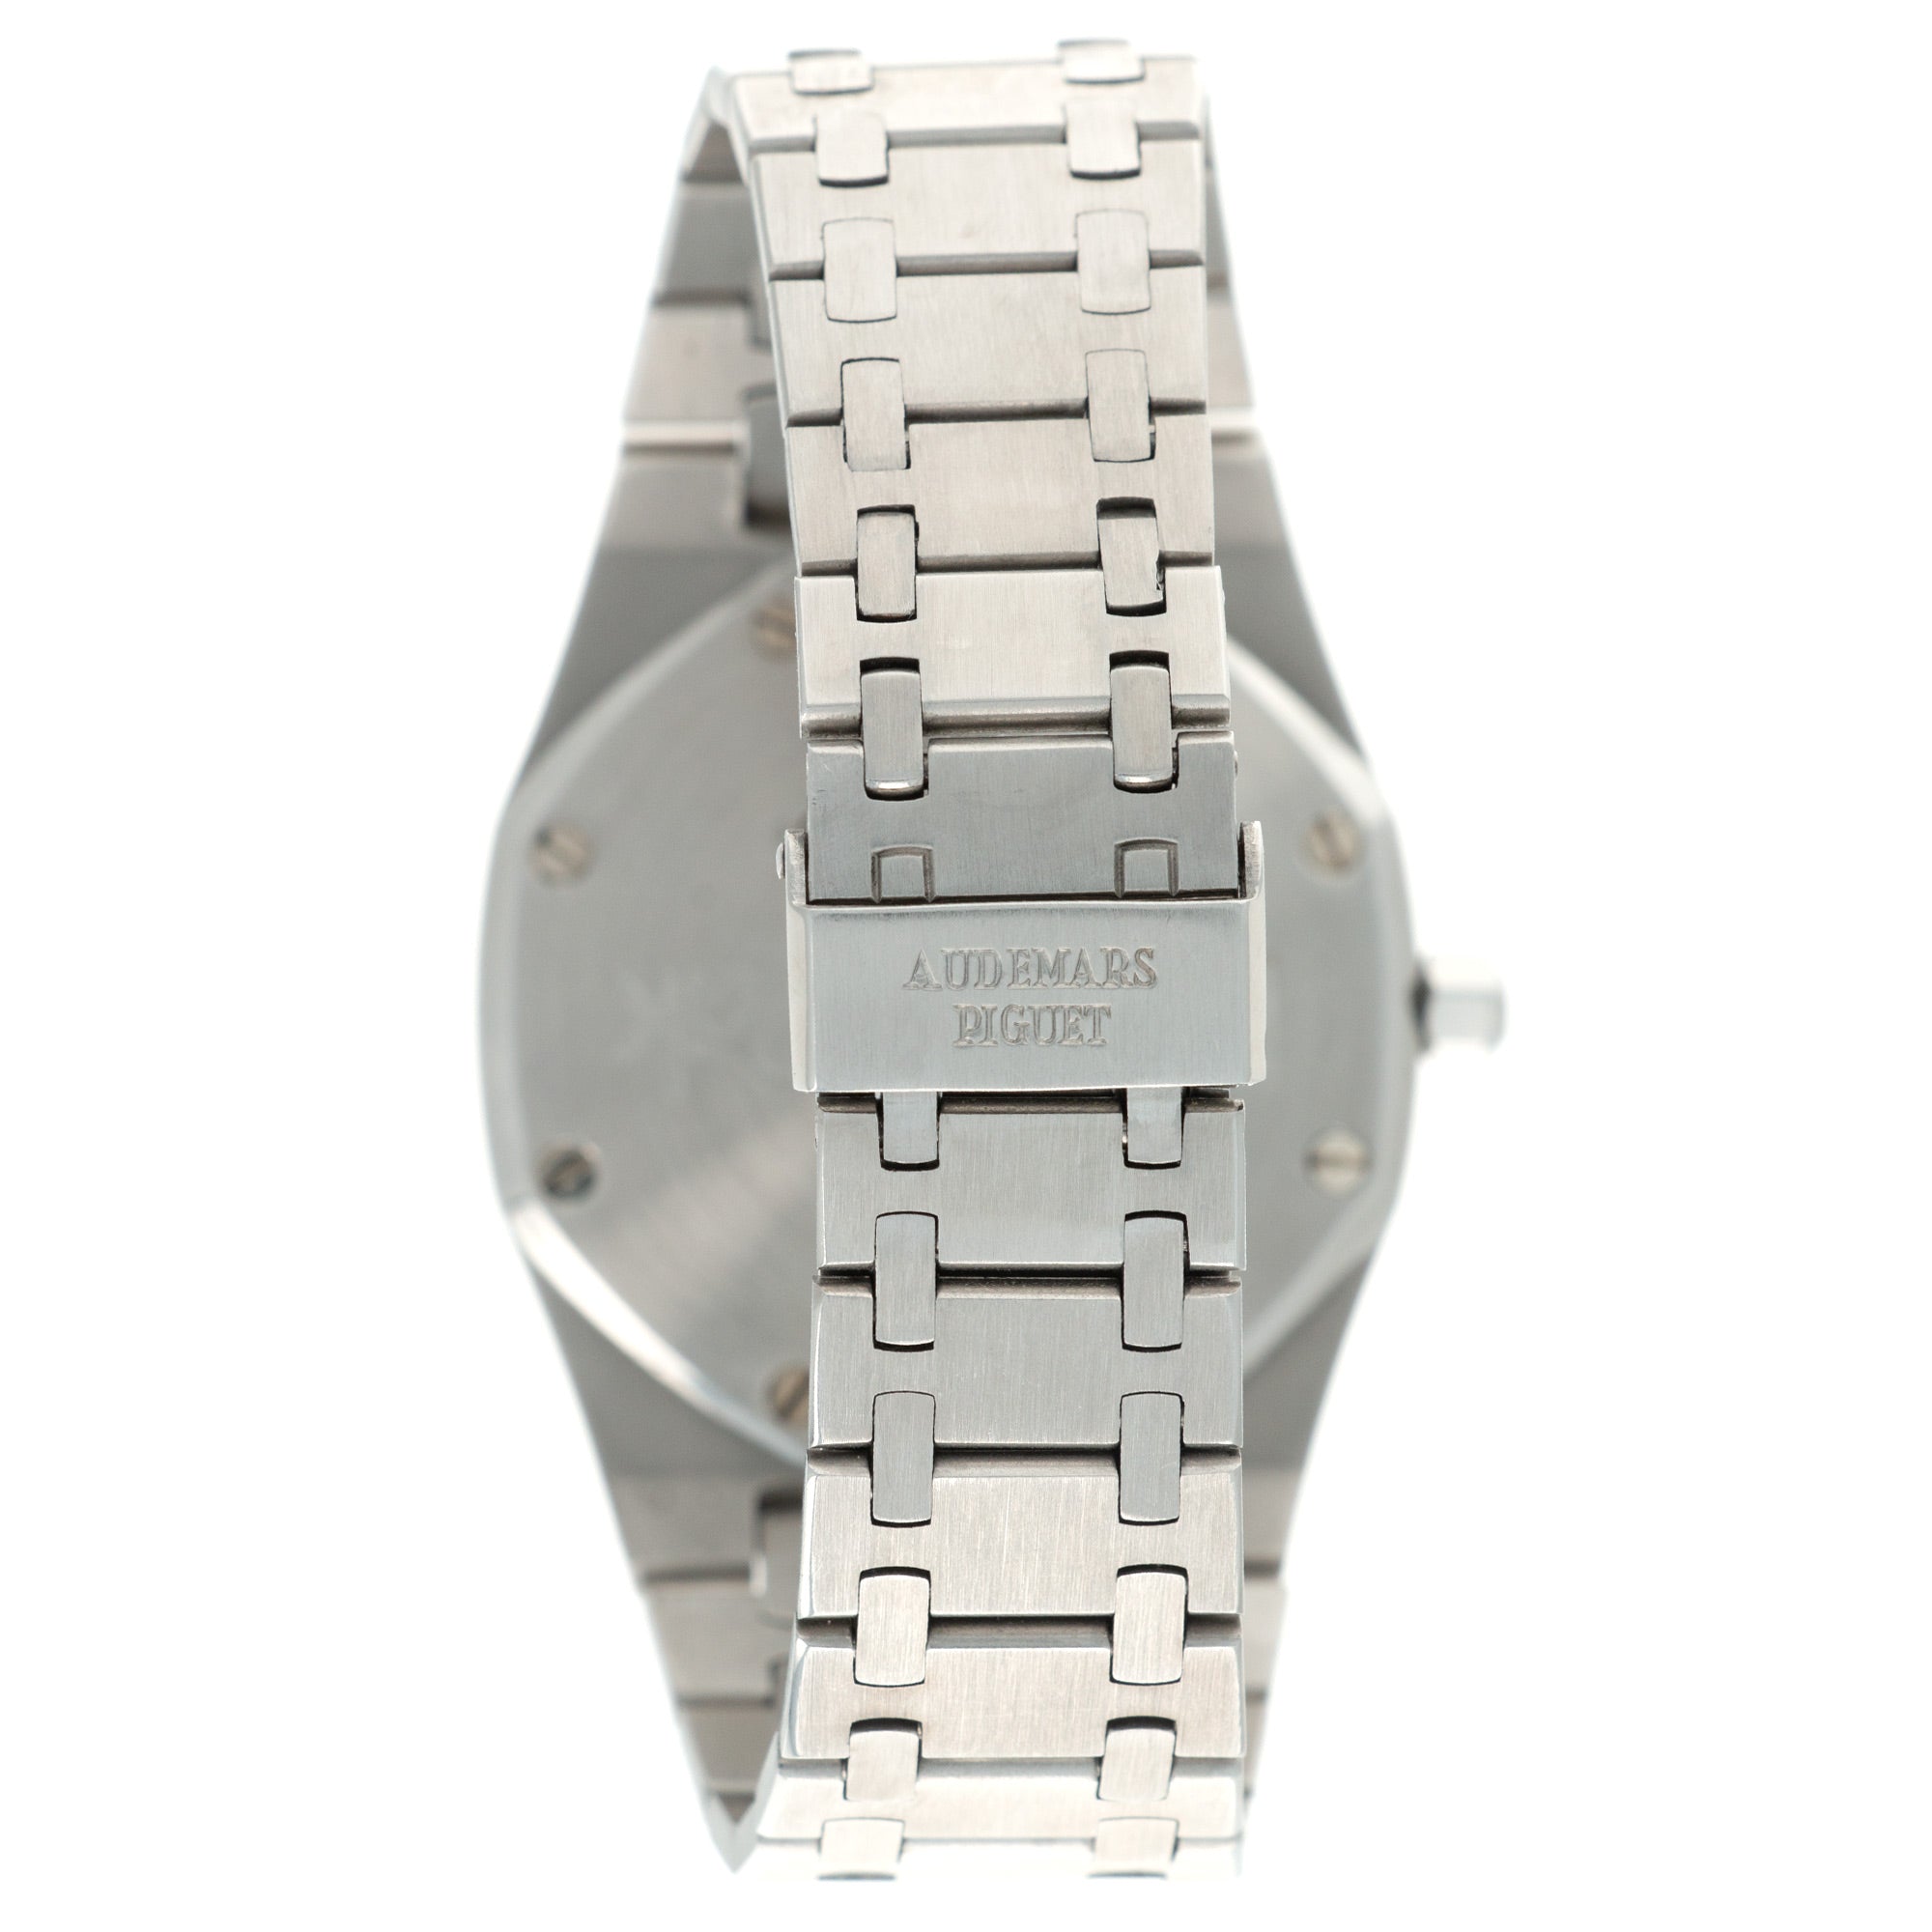 Audemars Piguet - Audemars Piguet A-Series Royal Oak Ref. 5402 - The Keystone Watches